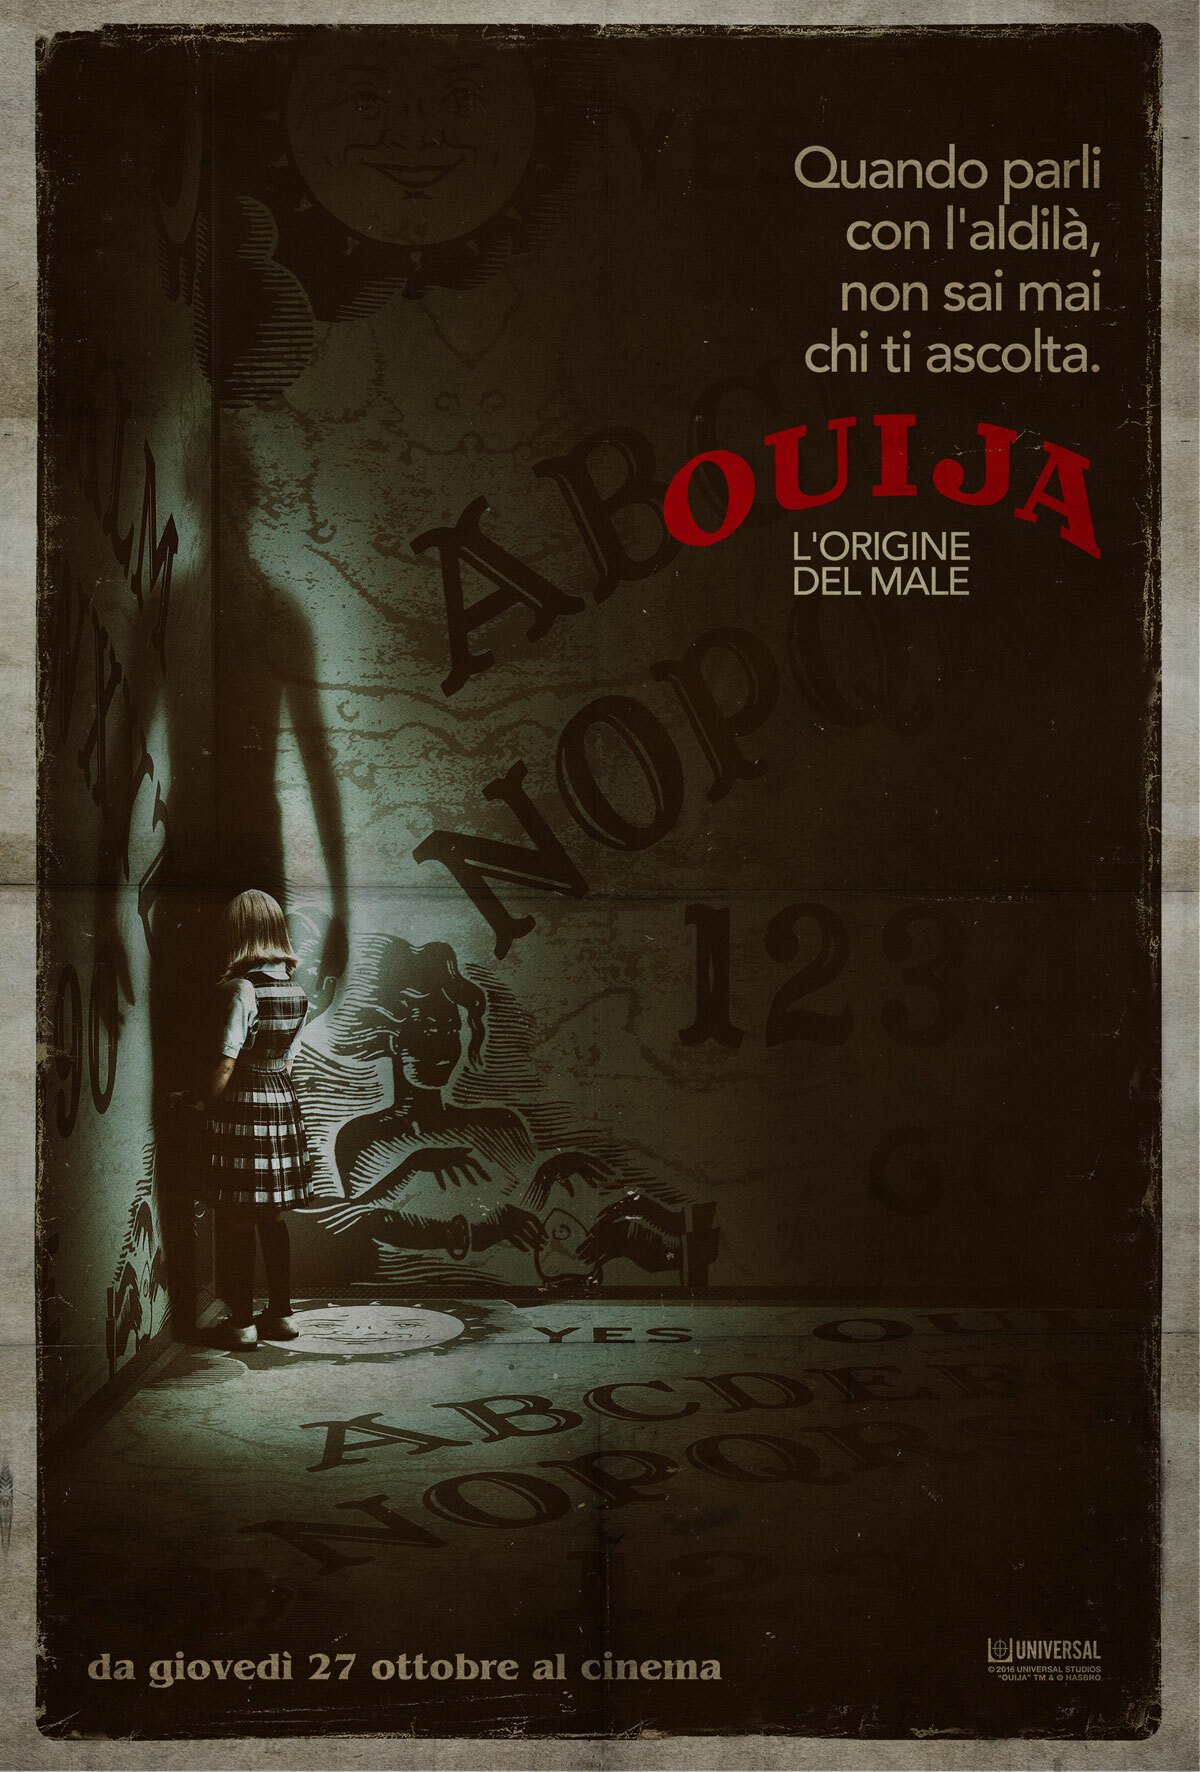 Ouija Le Origini del Male poste italiano